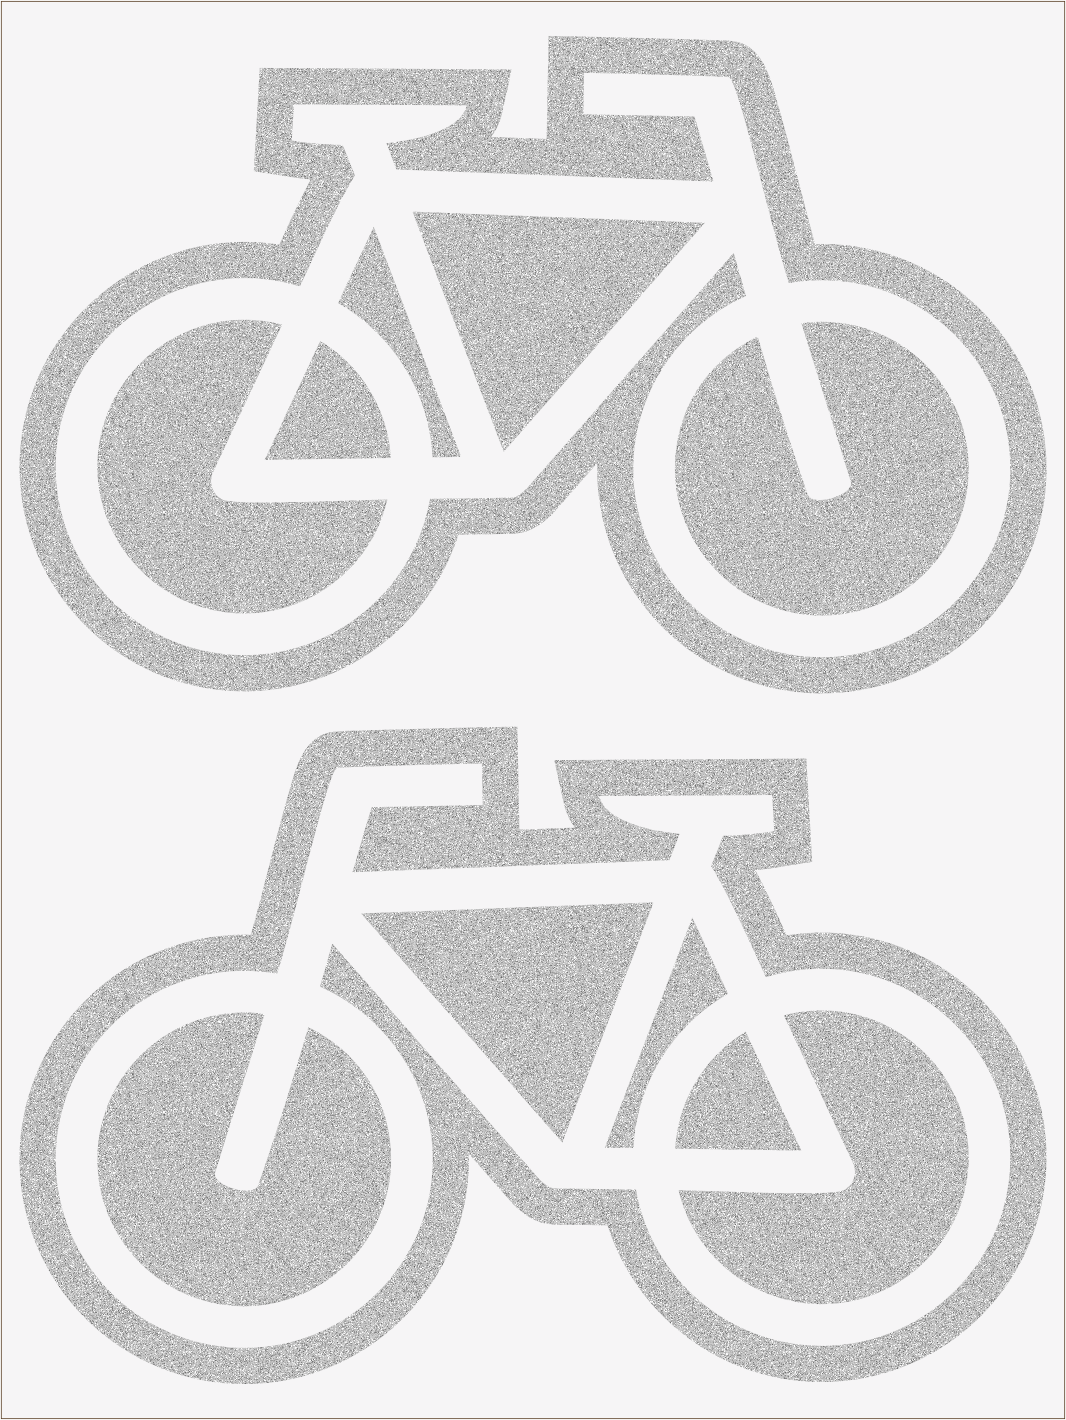 Bicykle